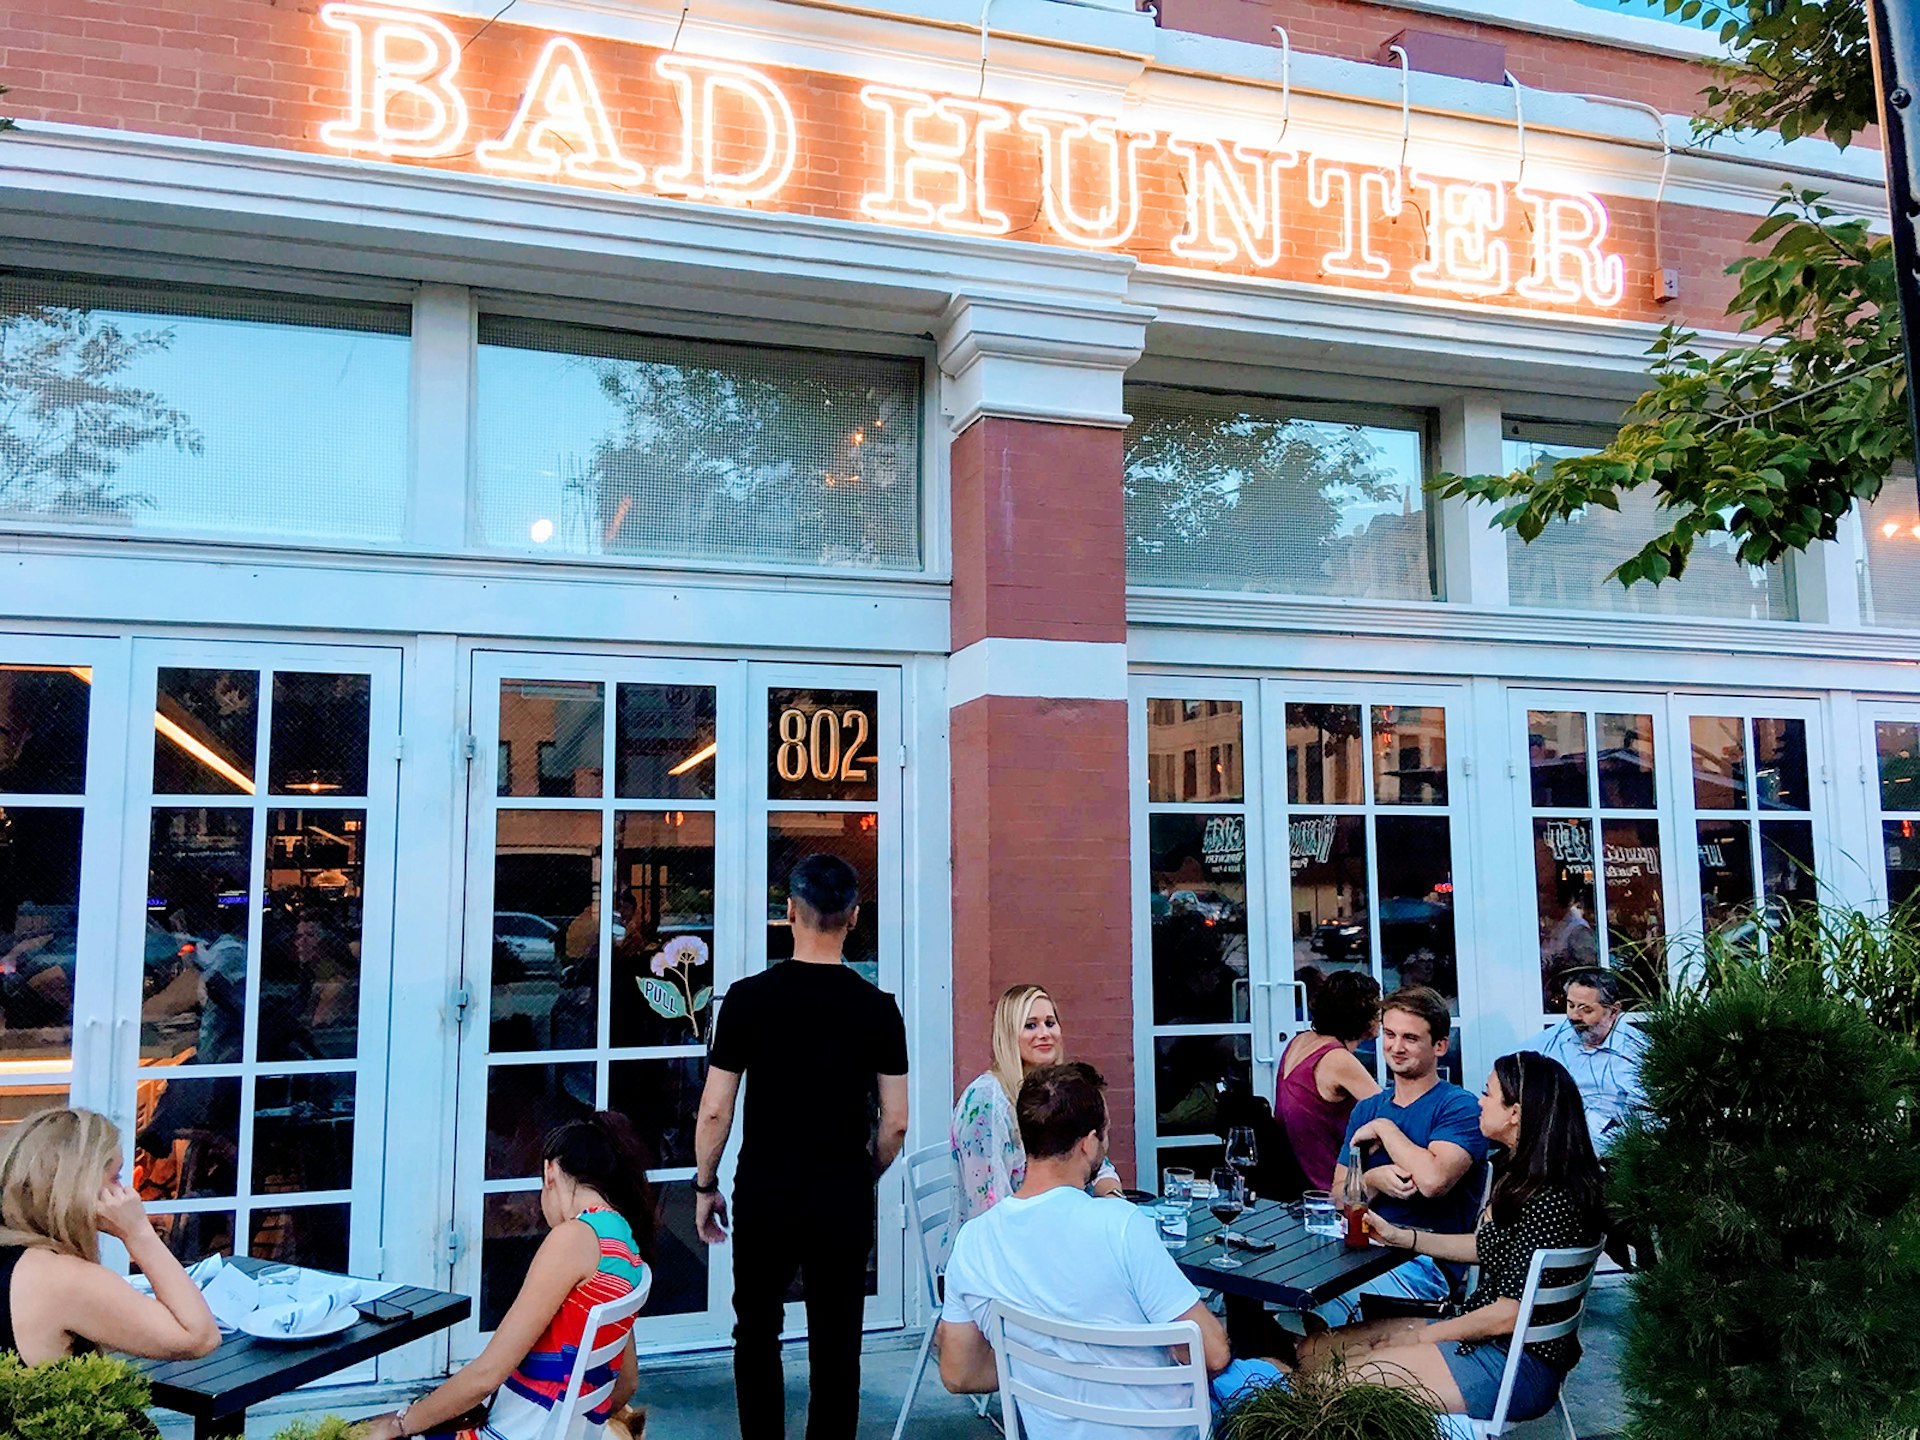 Exteriörbild av Chicago-restaurangen Bad Hunter, med vita franska dörrar, neonskyltar och en liten uteplats fylld med kunder;  hälsosam chicago